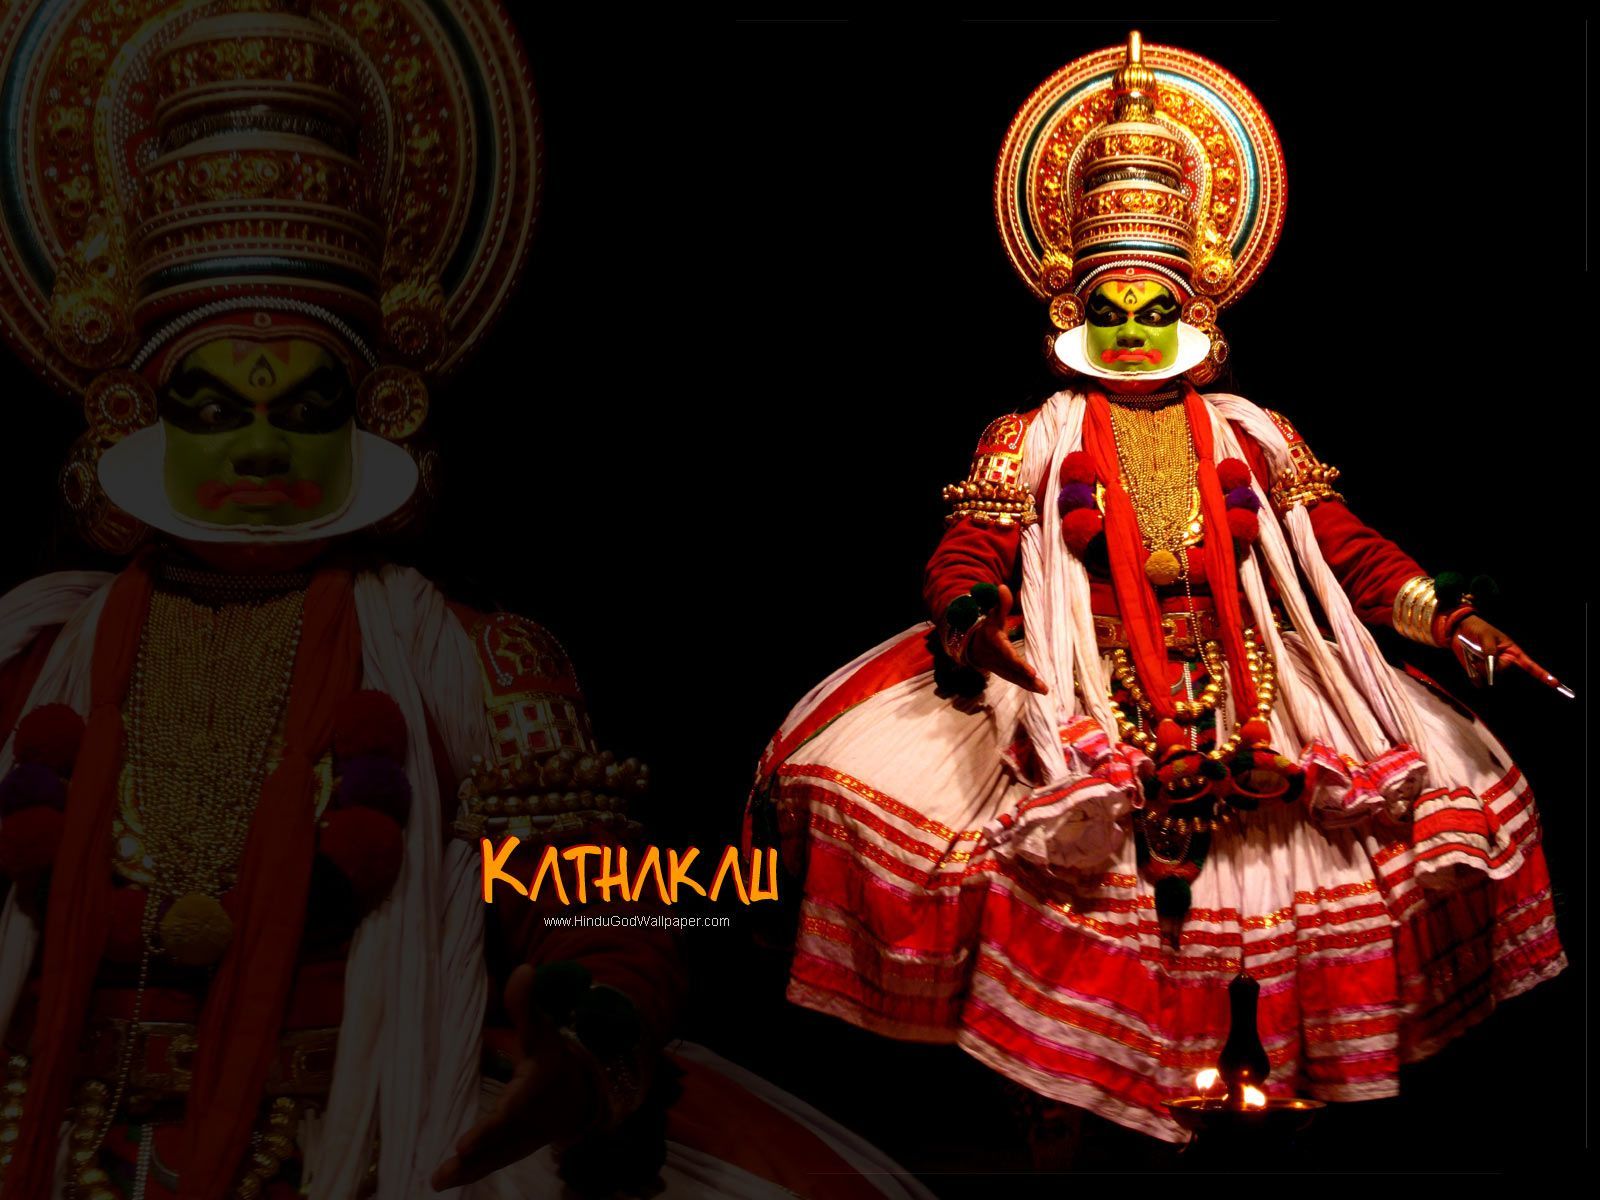 Free Kerala Kathakali HD Wallpaper Download. Dance wallpaper, Onam image, Indian classical dance